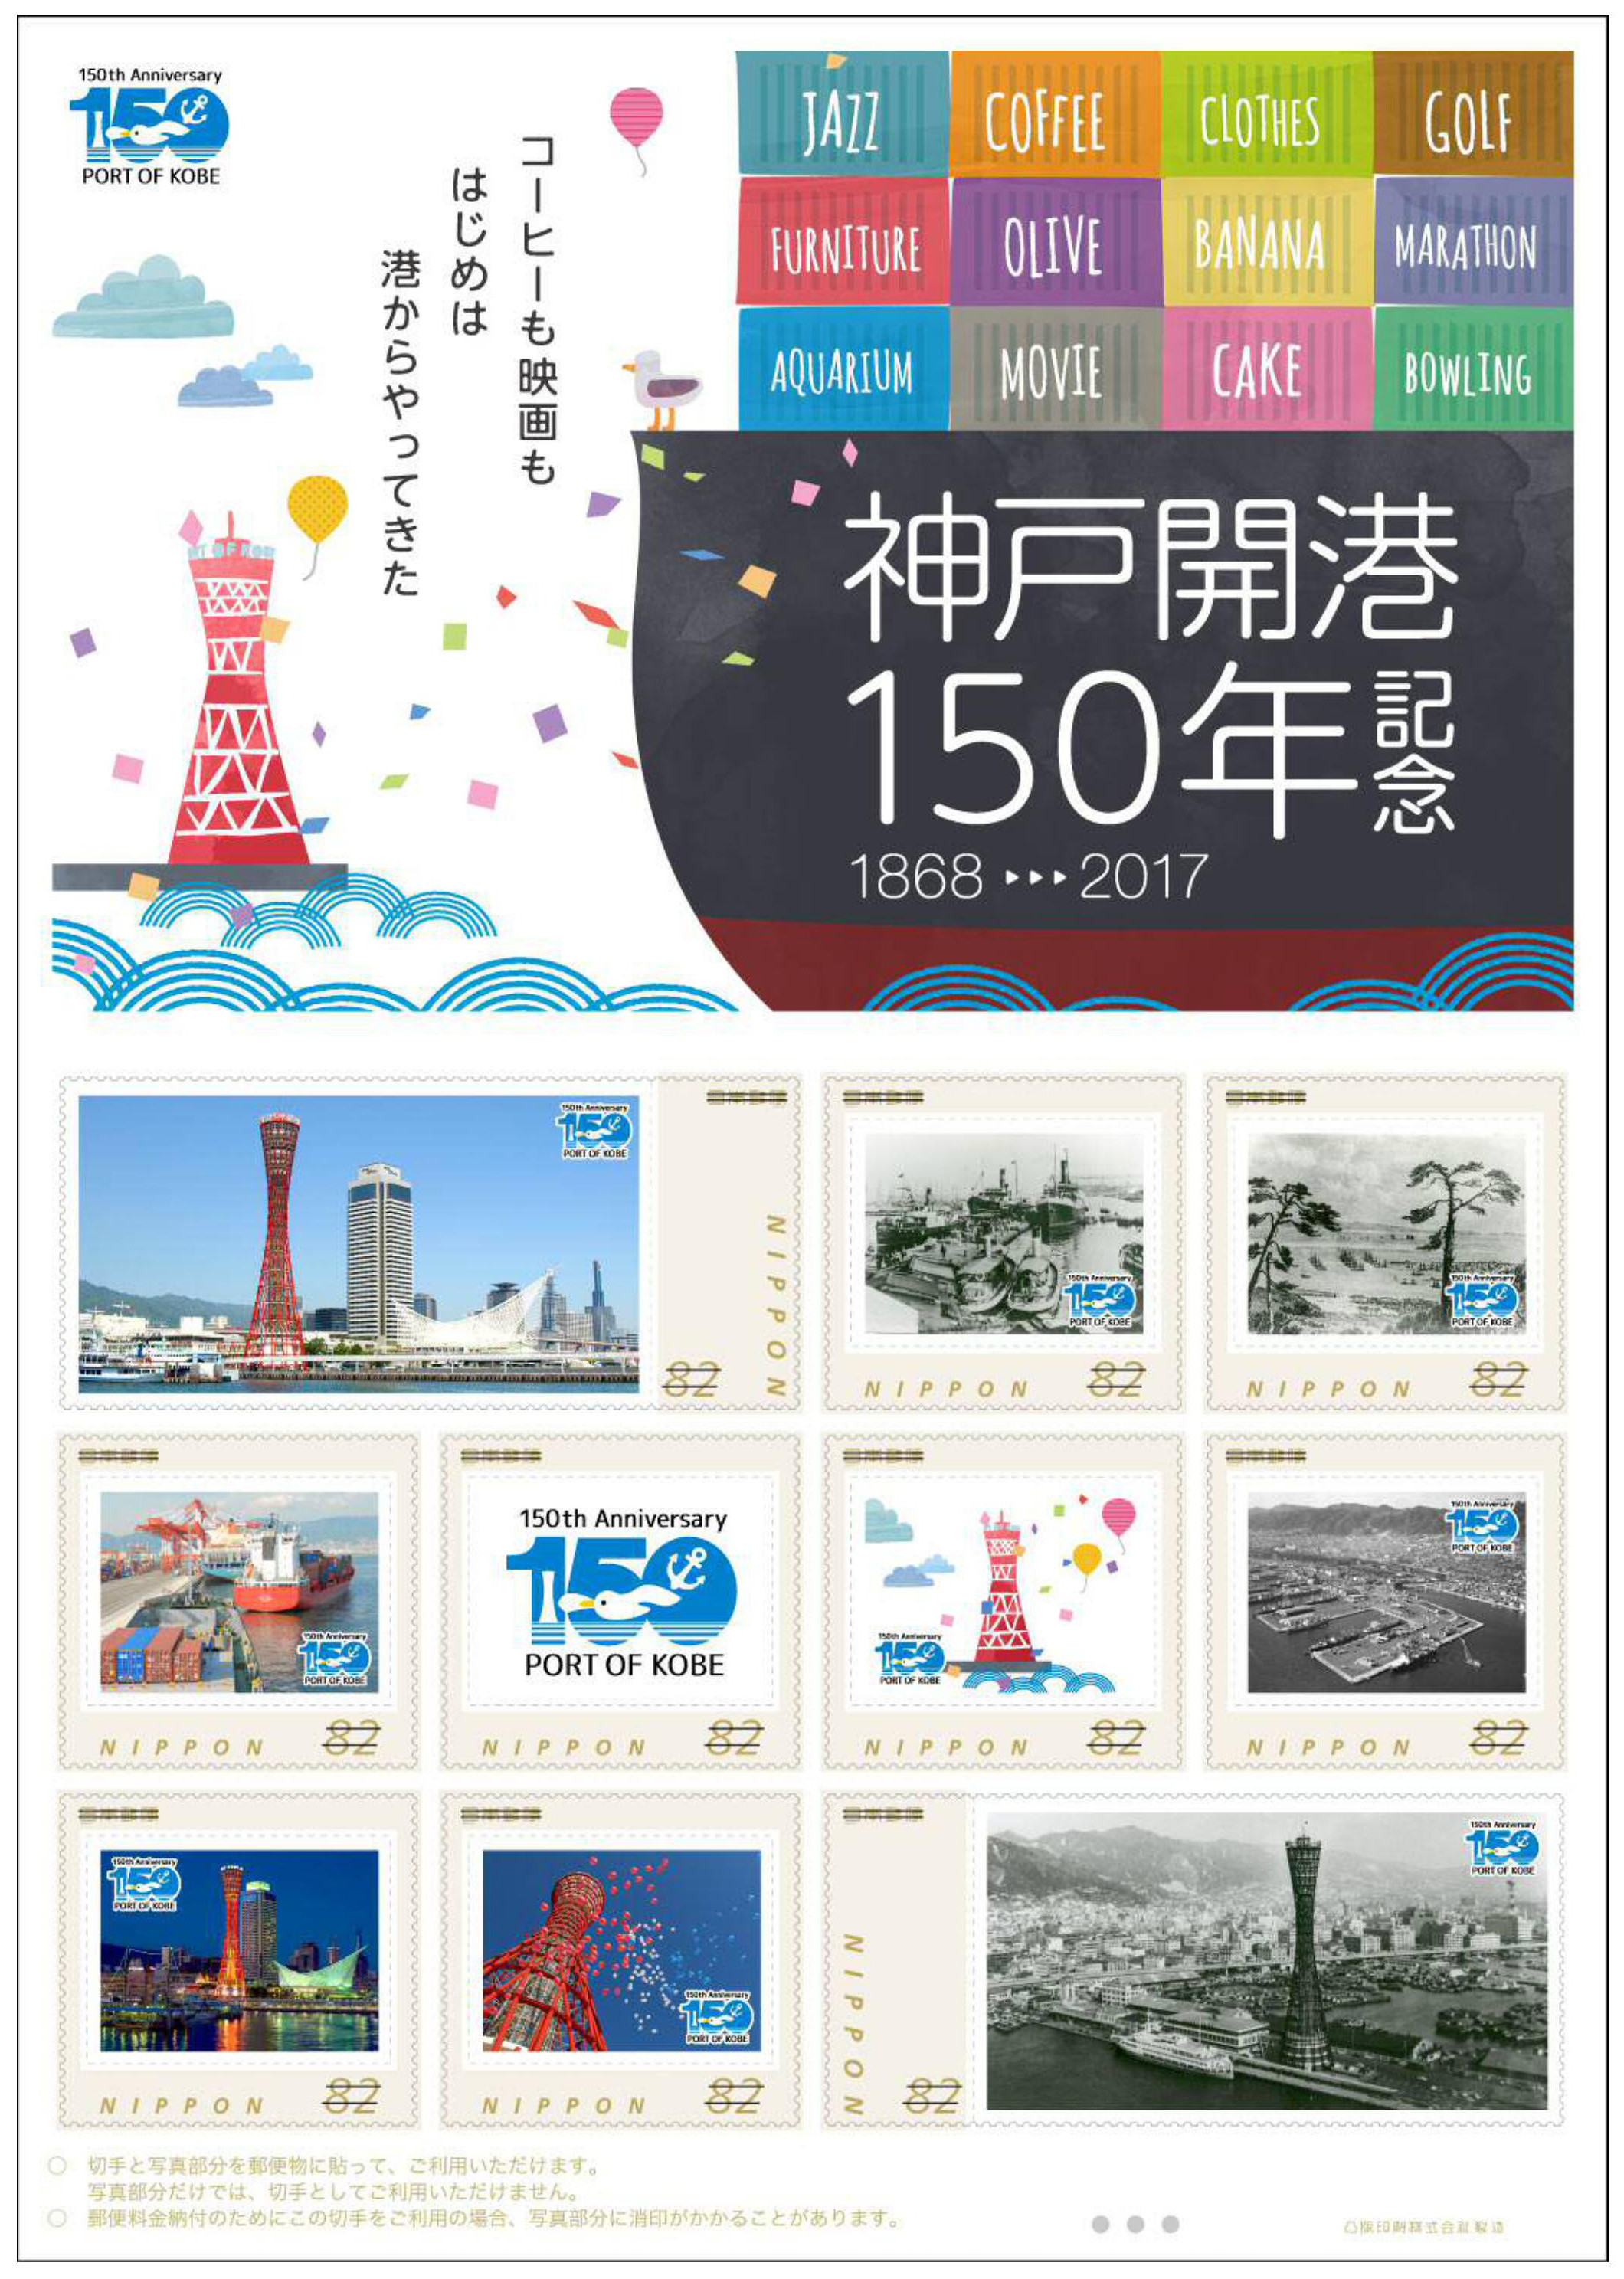 神戸開港150年 の記念切手が発売される 11 1に販売開始 限定なのでお早めに 神戸ジャーナル